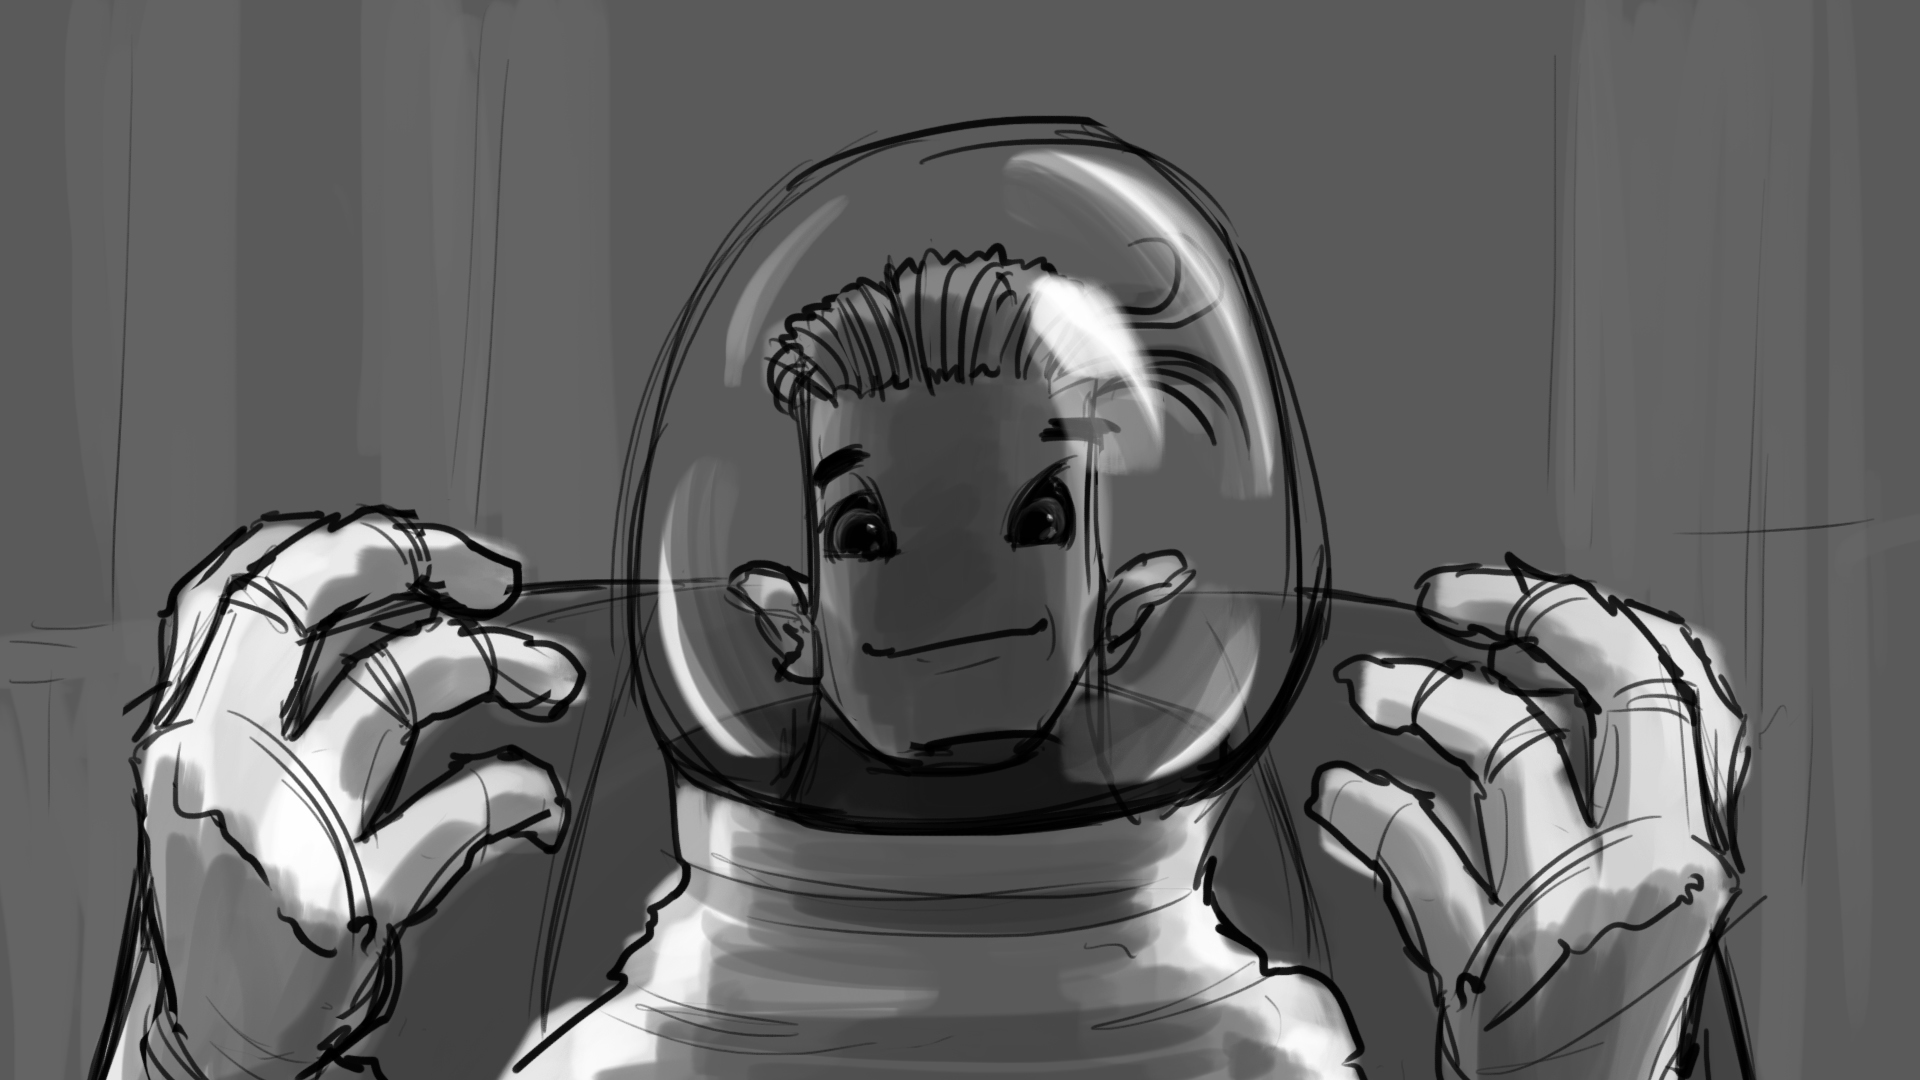 Rocket_Man_Storyboard_Artboard 36.jpg